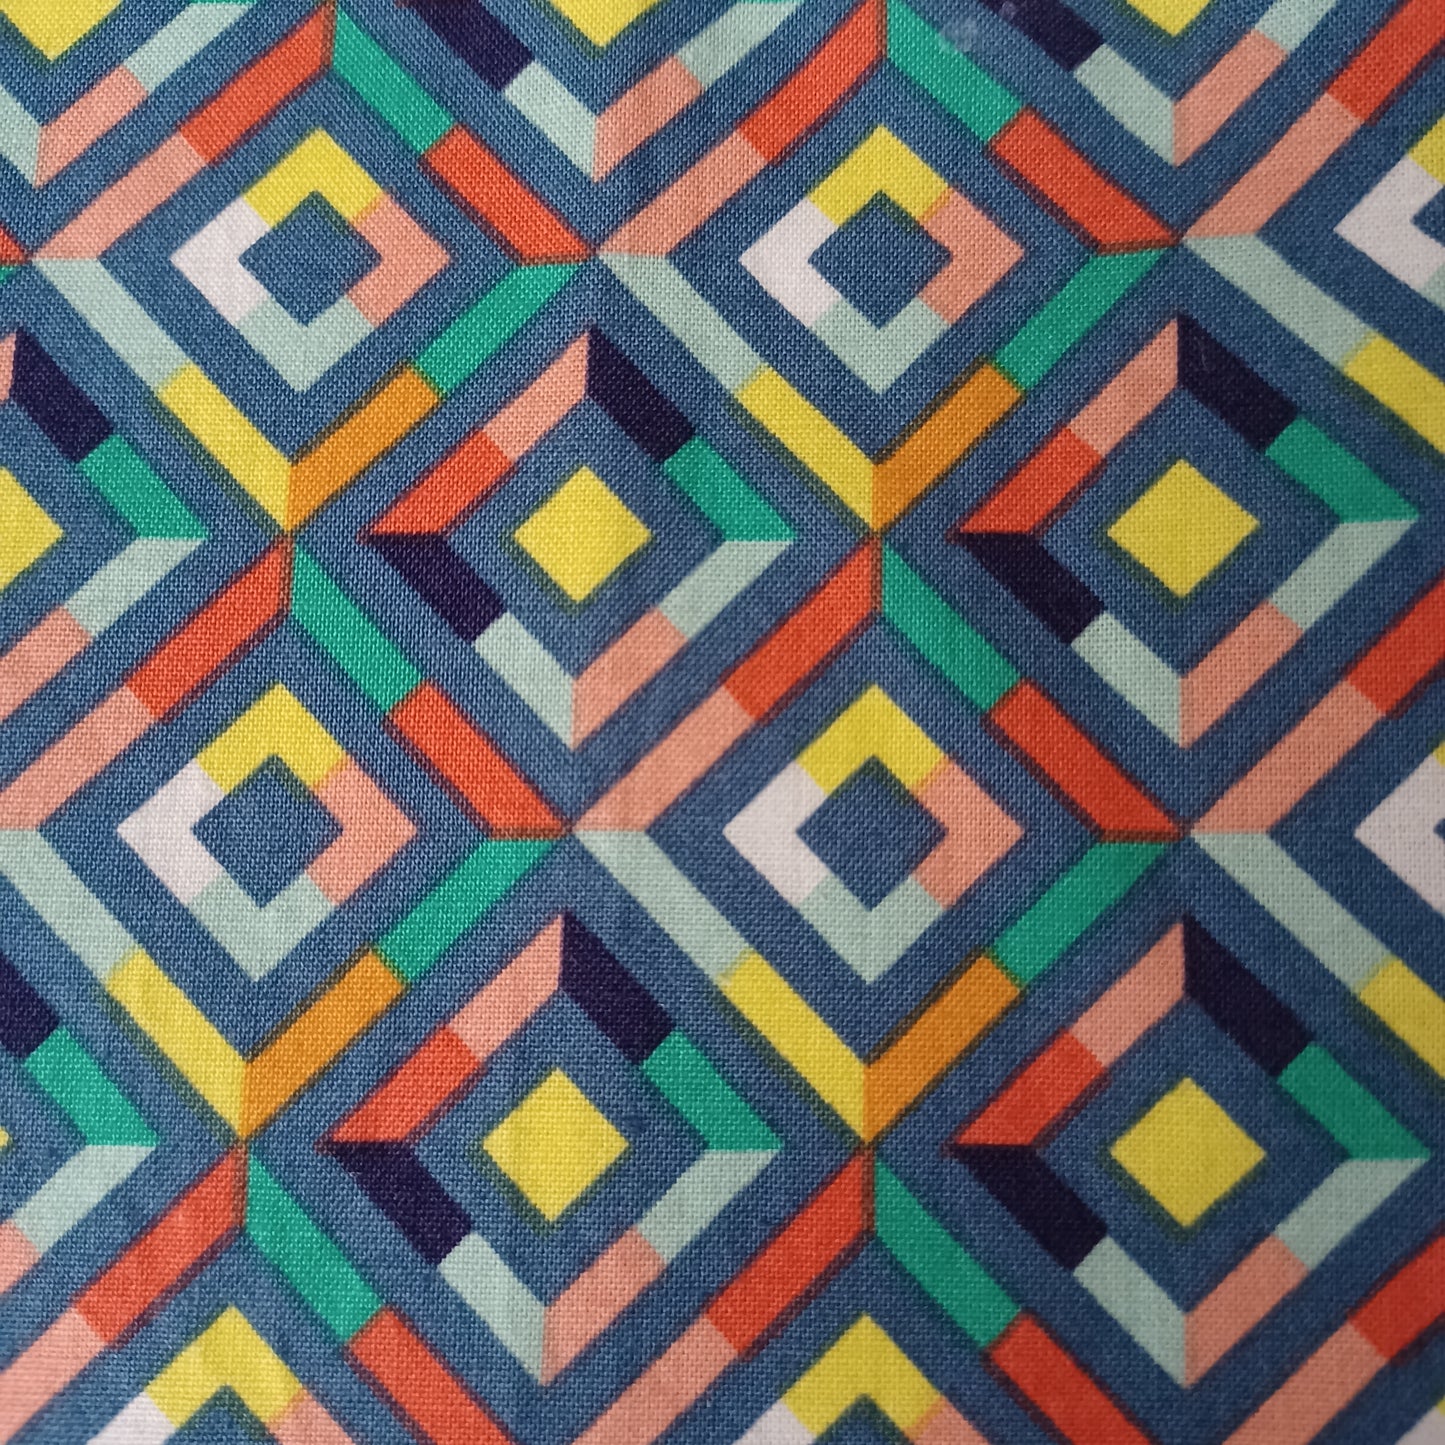 Modèle A-Chat et chien-Foulard avec carrés multicolores/Bandana with multicolored squares